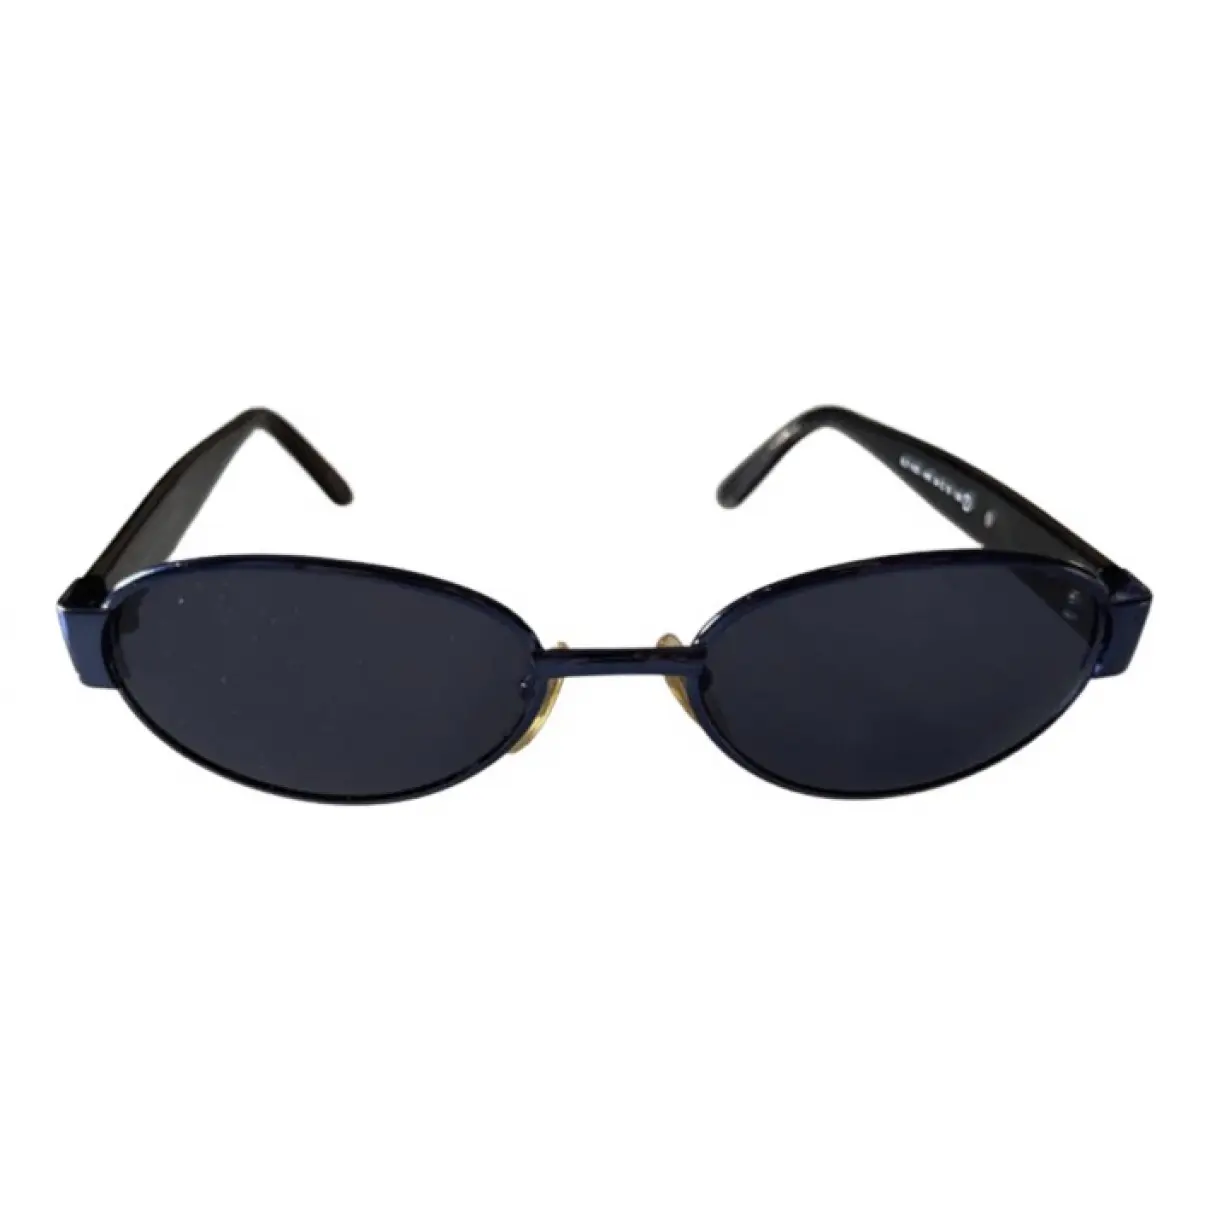 Sunglasses SISLEY - Vintage